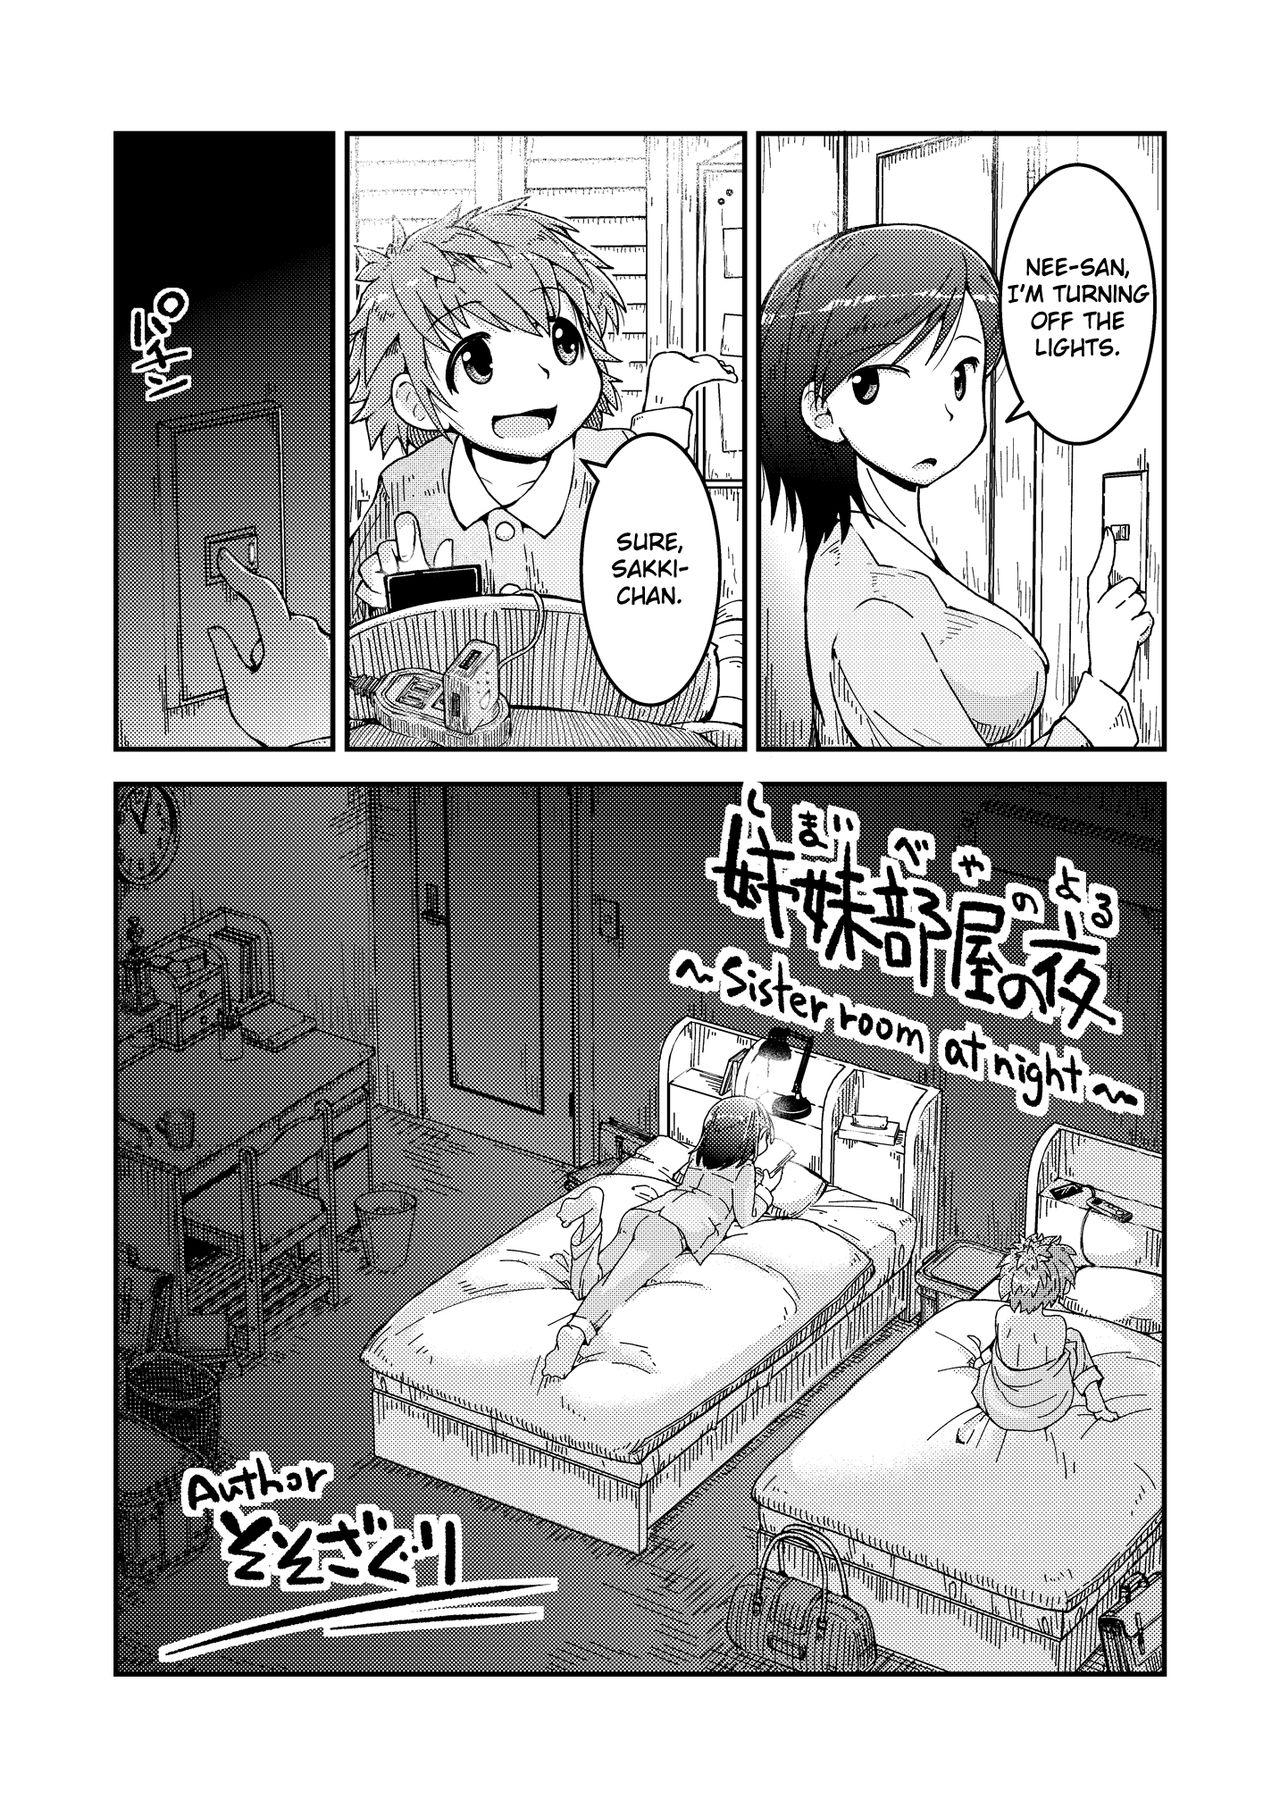 Cheating Shimaibeya no Yoru | Sister Room at Night - Original Full Movie - Page 1